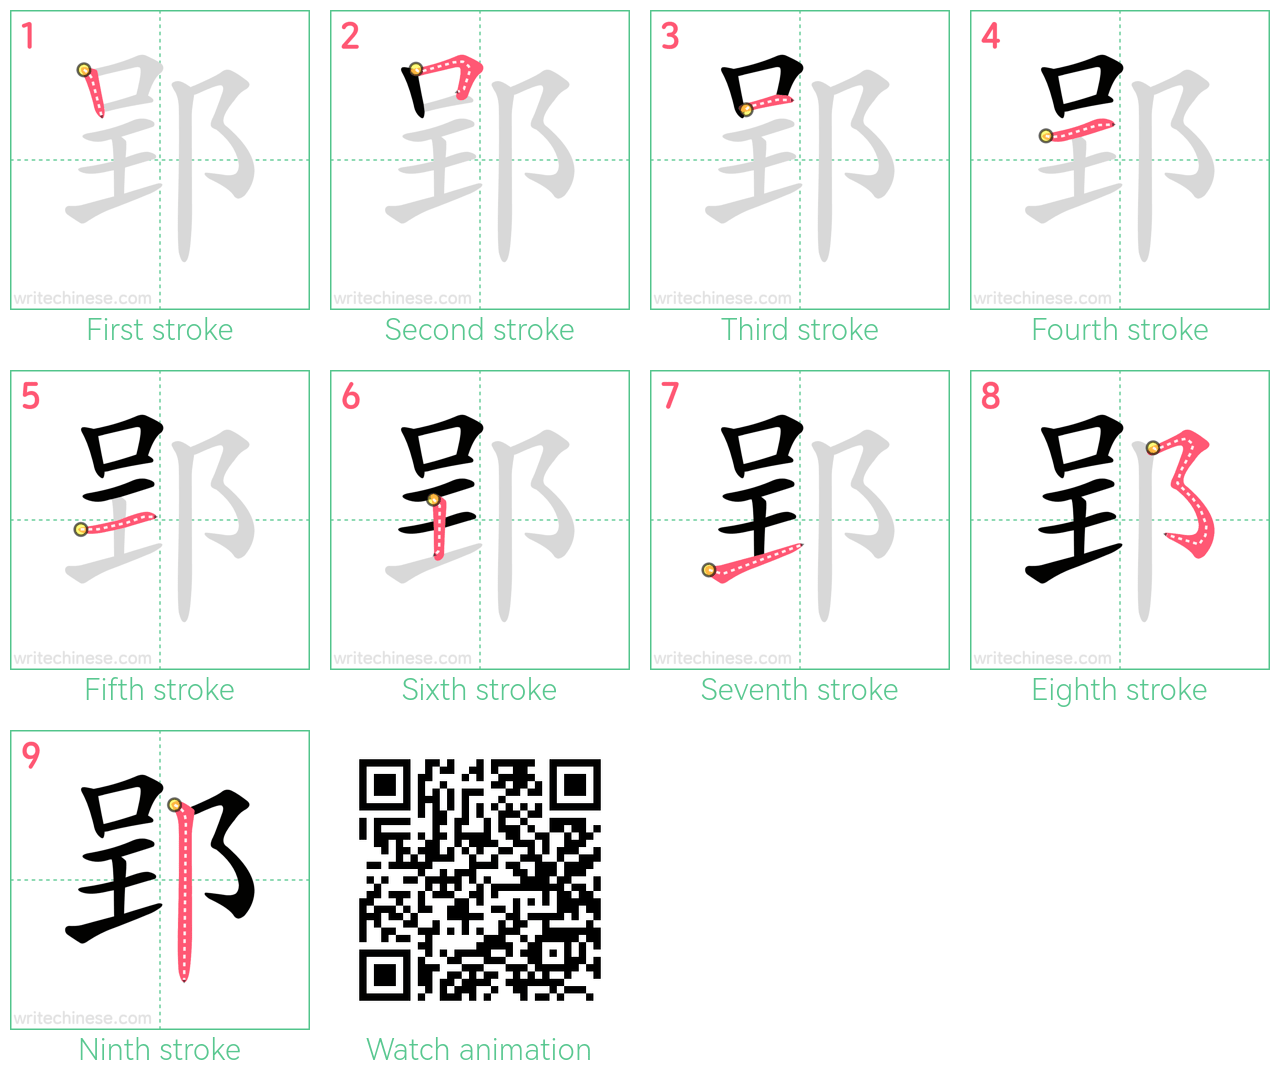 郢 step-by-step stroke order diagrams